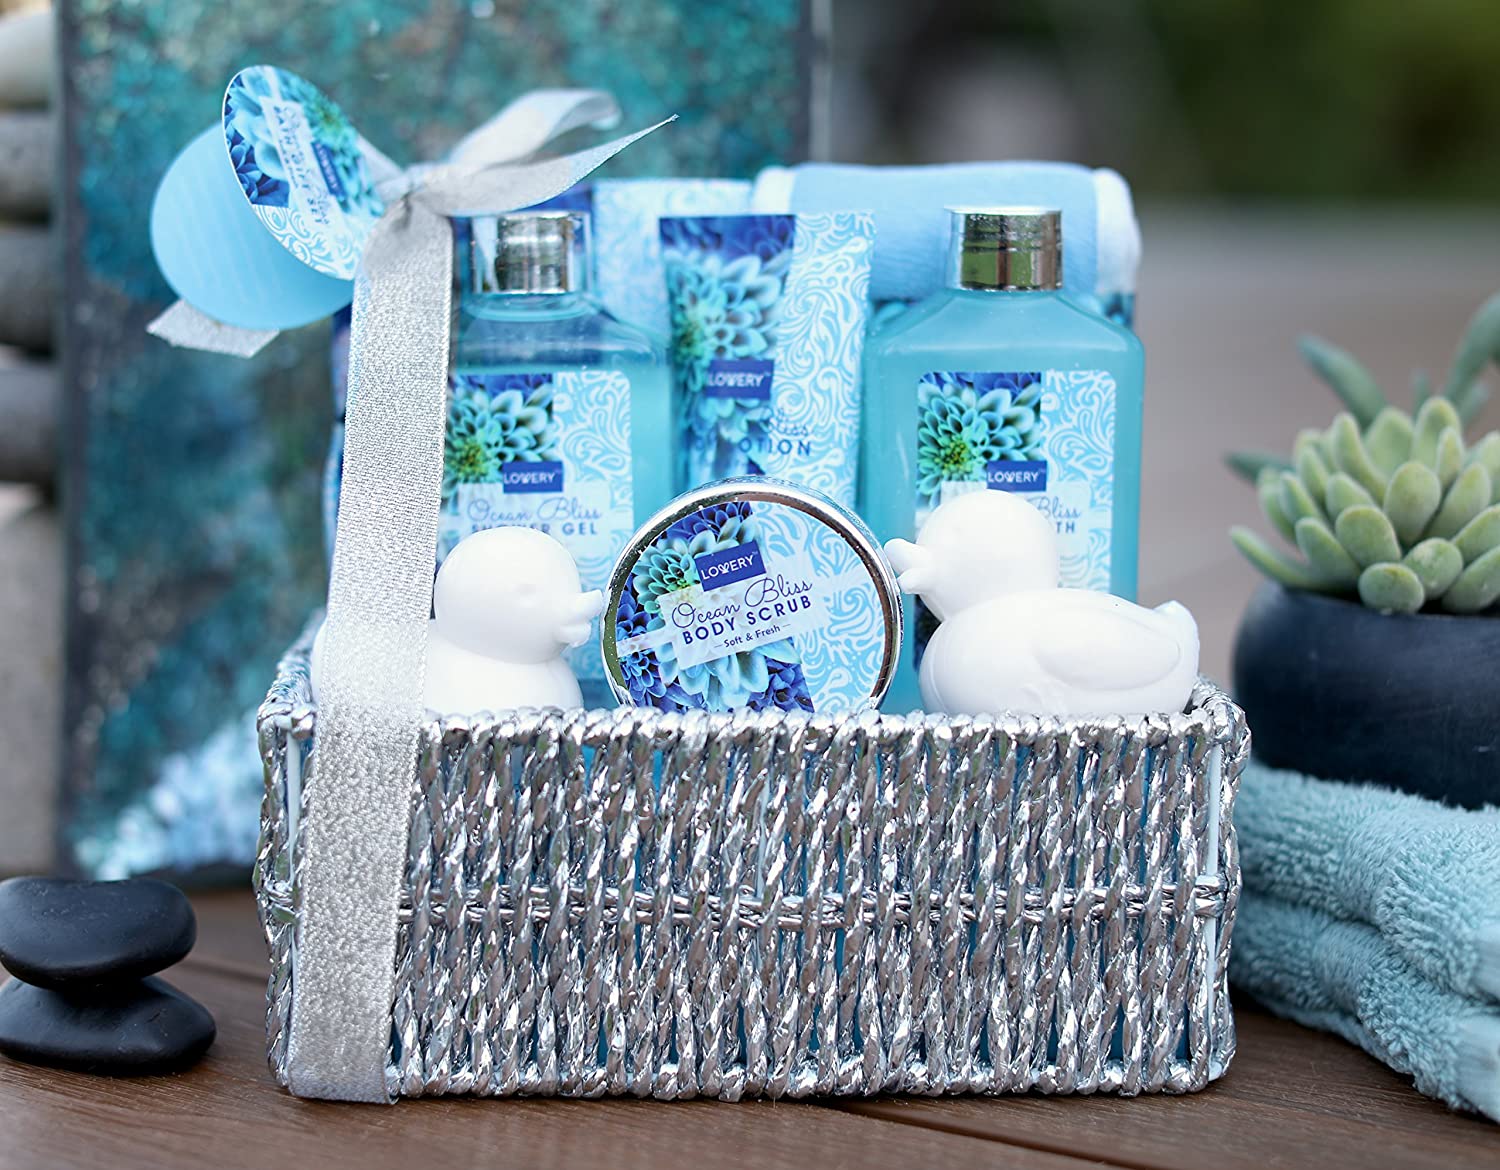 Honey Gift Basket Easter Gift Set Mothers Day Gift Set - Etsy | Honey gift  basket, Honey gifts, Easter gift sets